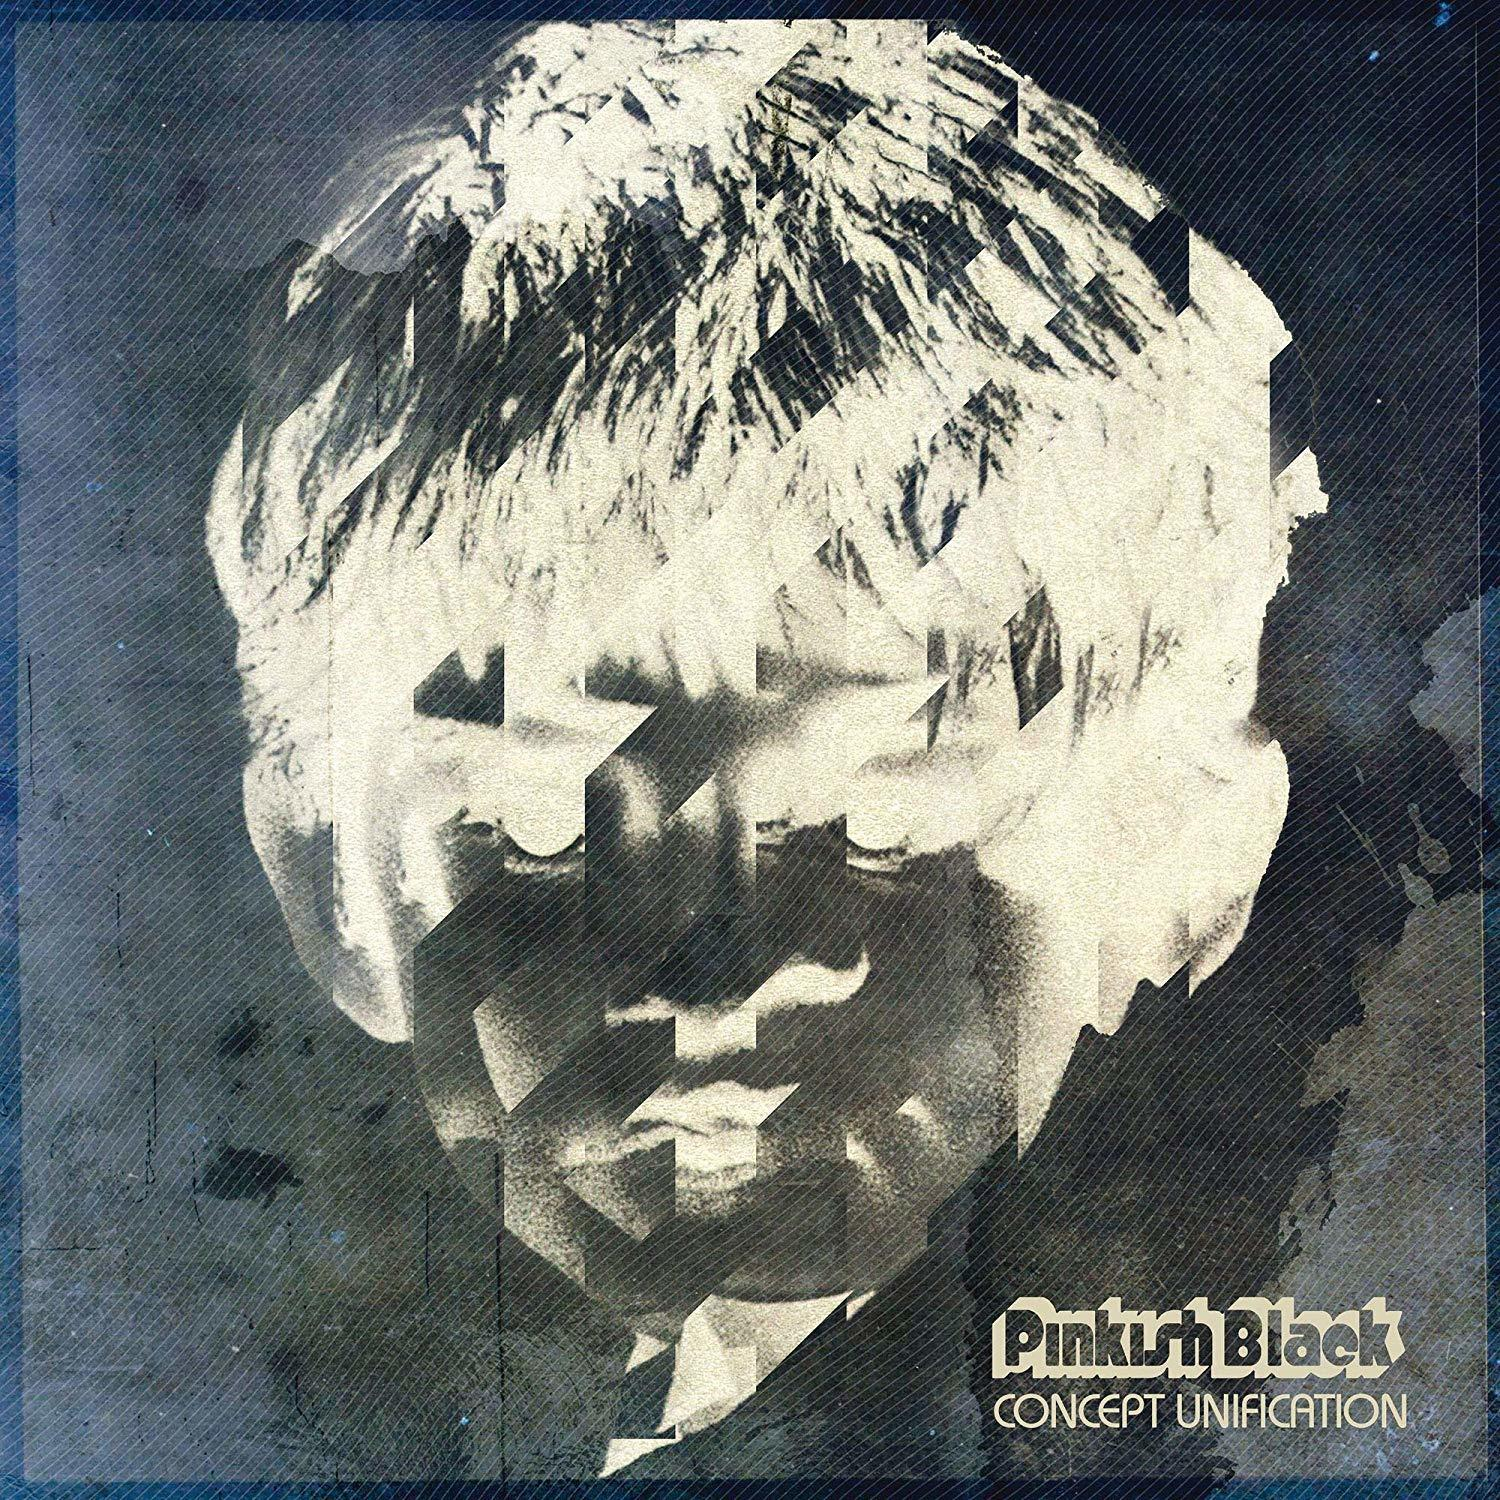 Pinkish Black - Concept (LP+MP3) - Unification (Vinyl)